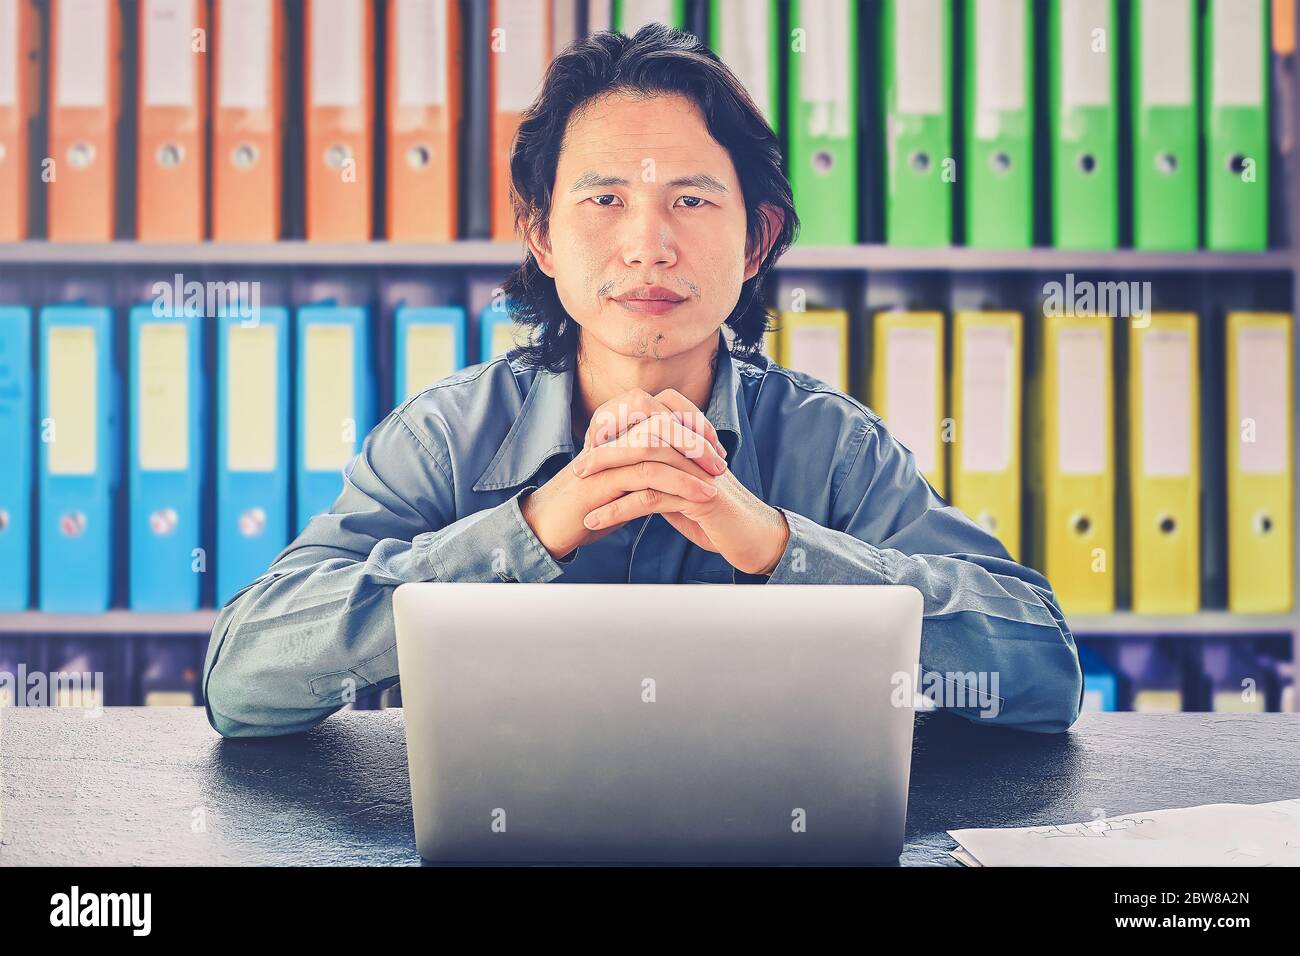 Asiatische Geschäftsmann mit Laptop sitzen auf dem Schreibtisch Blick auf Kamera Bestimmung, Willpower bleiben konzentriert und entschlossen, bleiben entschlossen in der Verfolgung ihrer Stockfoto